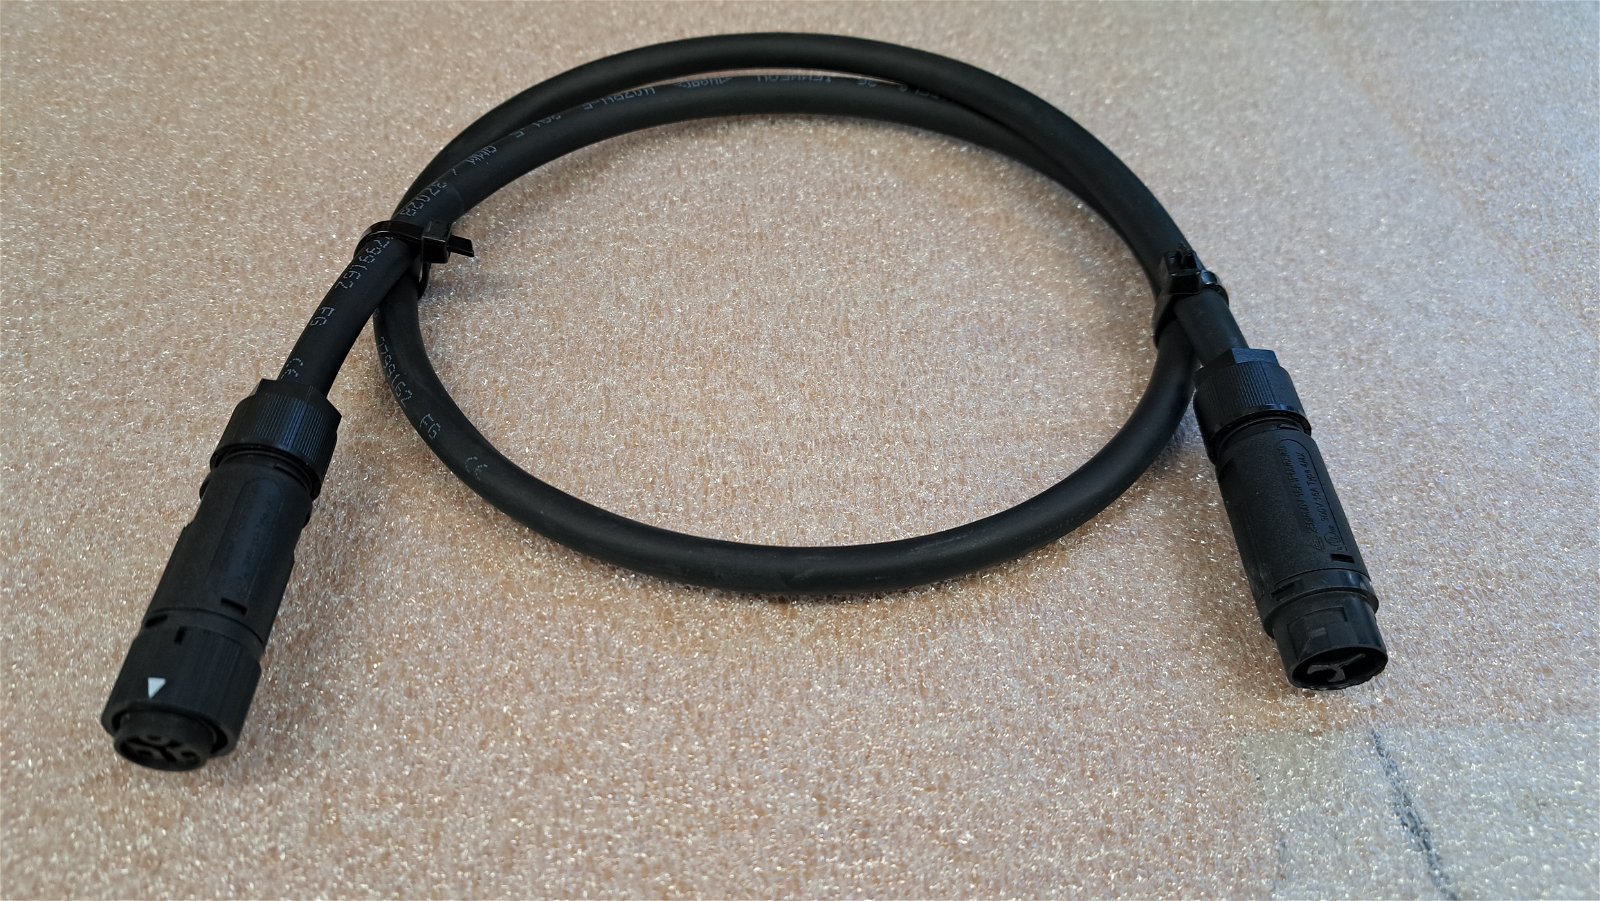 Detailansicht: Extra Kabel 1,5 mm²  für Anlehnbügel 'Sheffield Charge' (Art. 60026.0001)